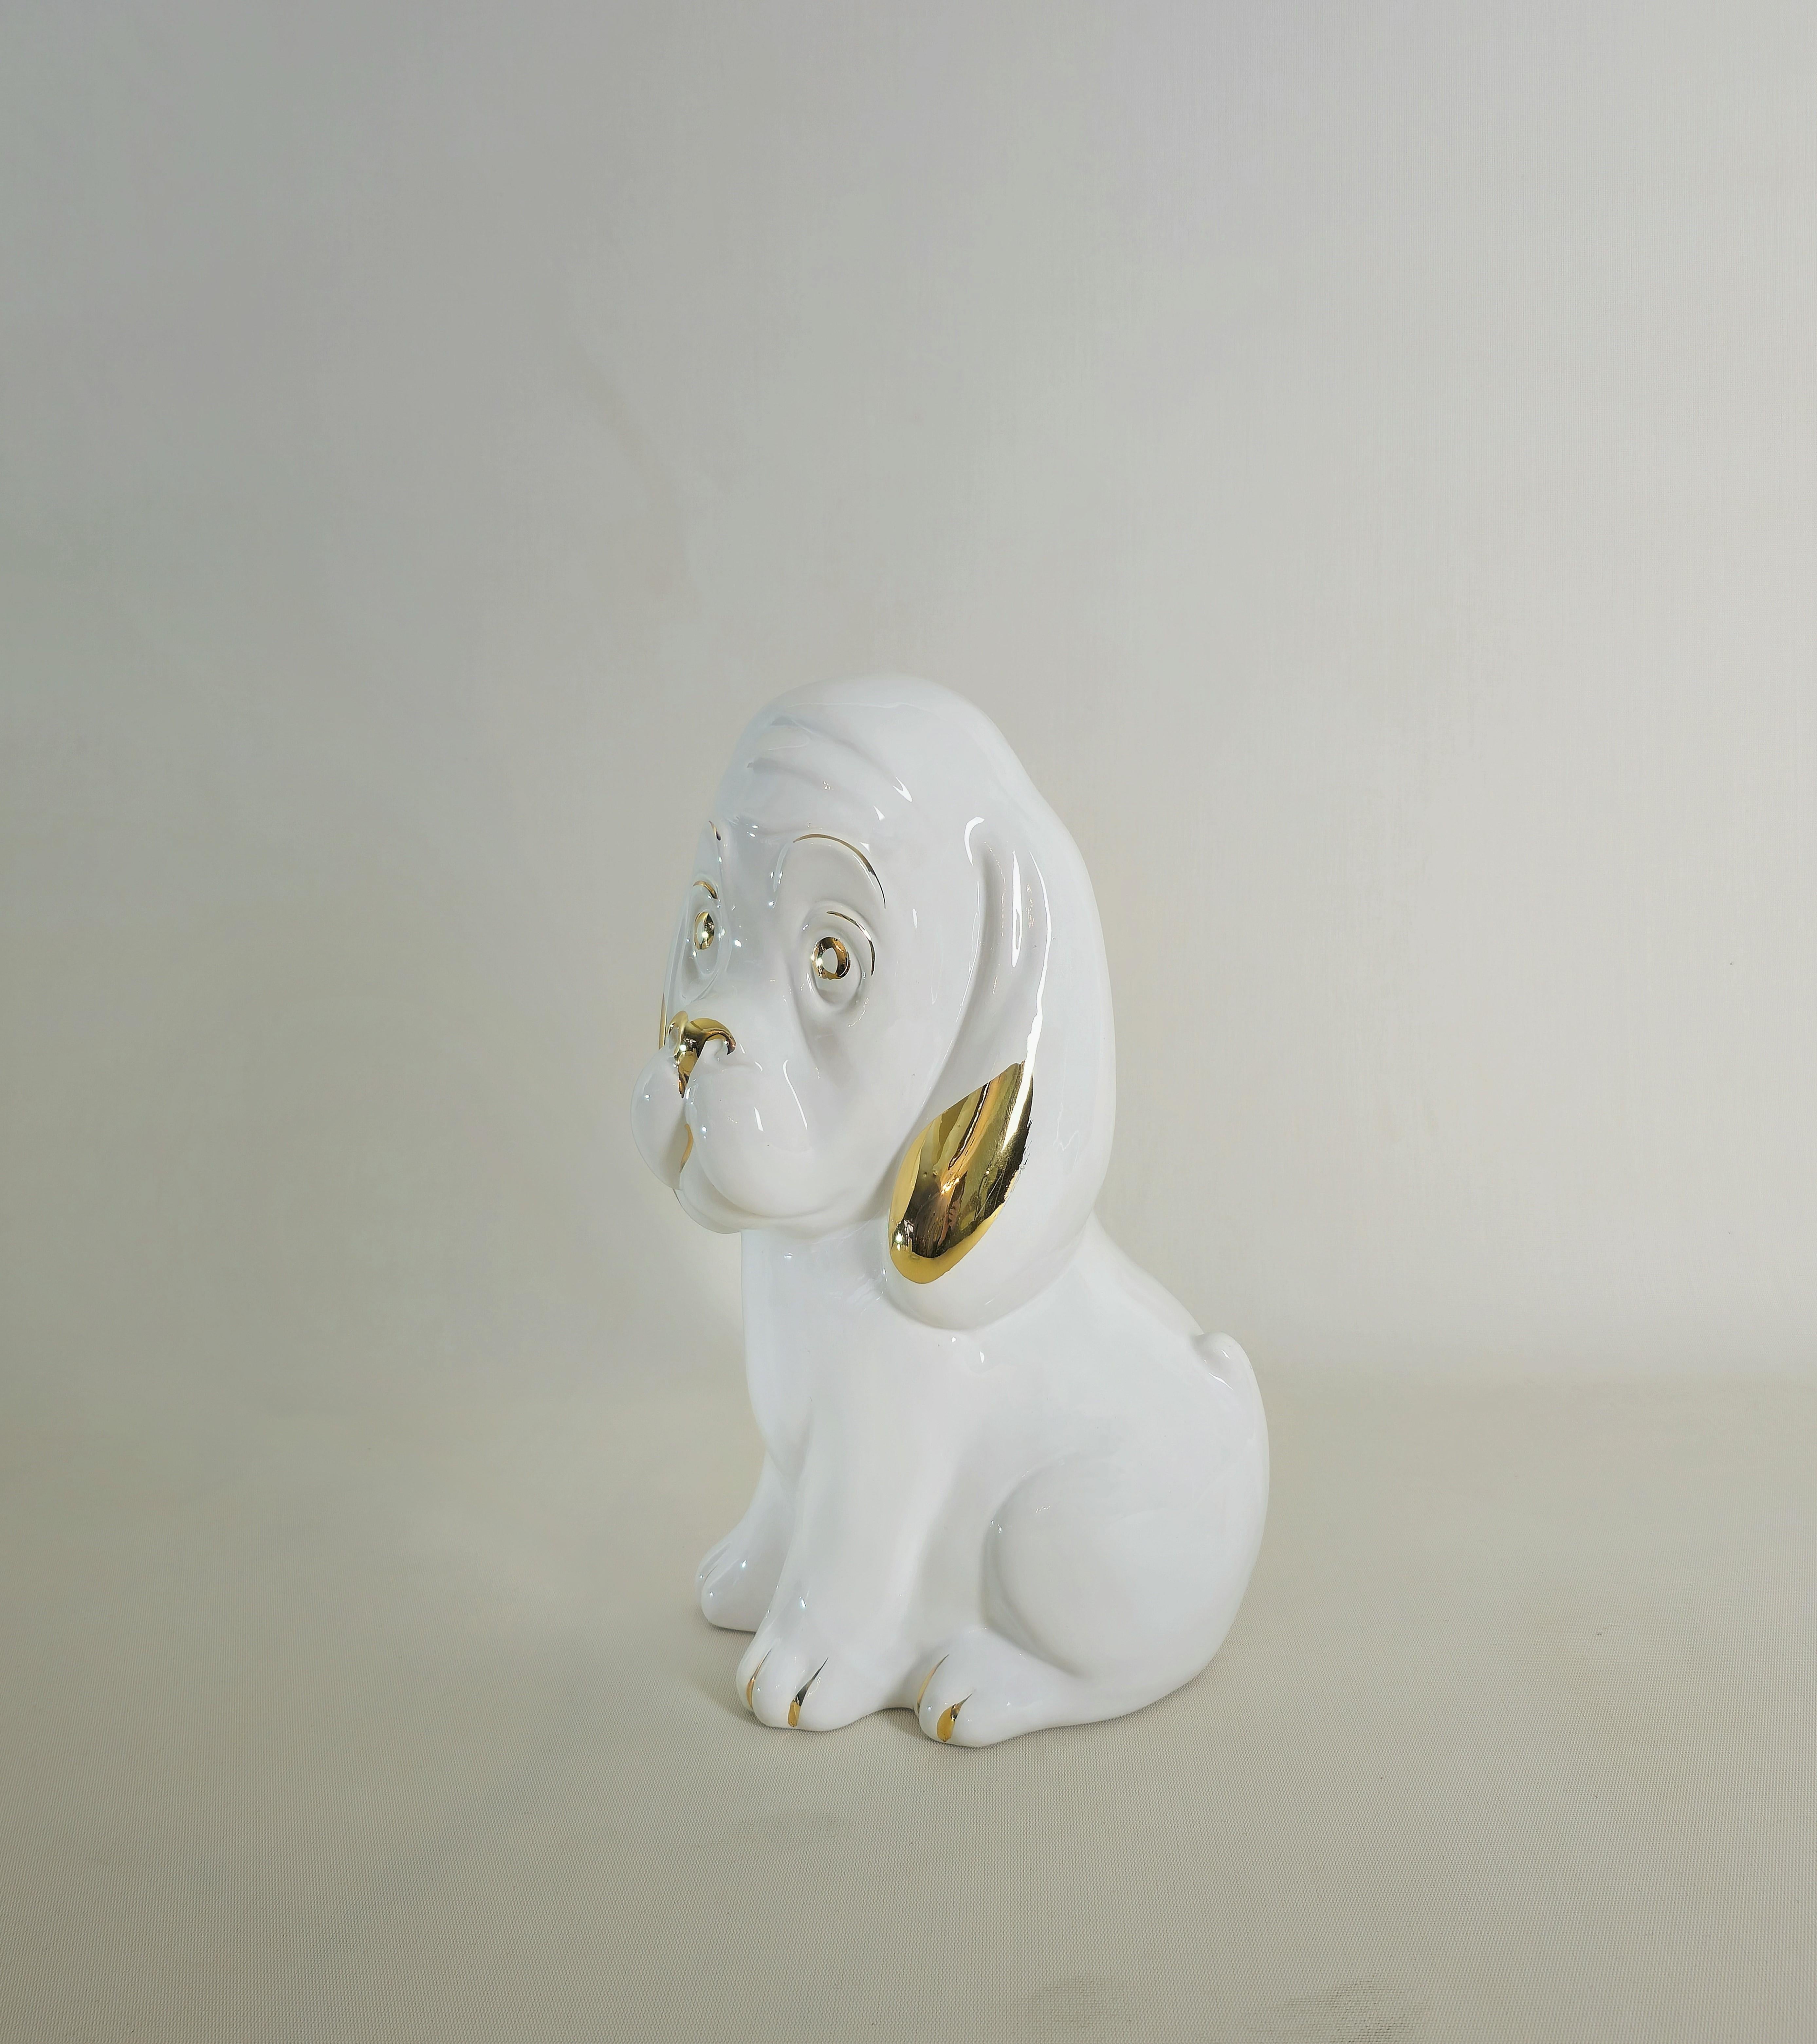 Très beau et grand chien en porcelaine émaillée blanche avec définitions dorées. Production italienne des années 70.



Note : Nous essayons d'offrir à nos clients un excellent service, même pour les envois dans le monde entier, en collaborant avec